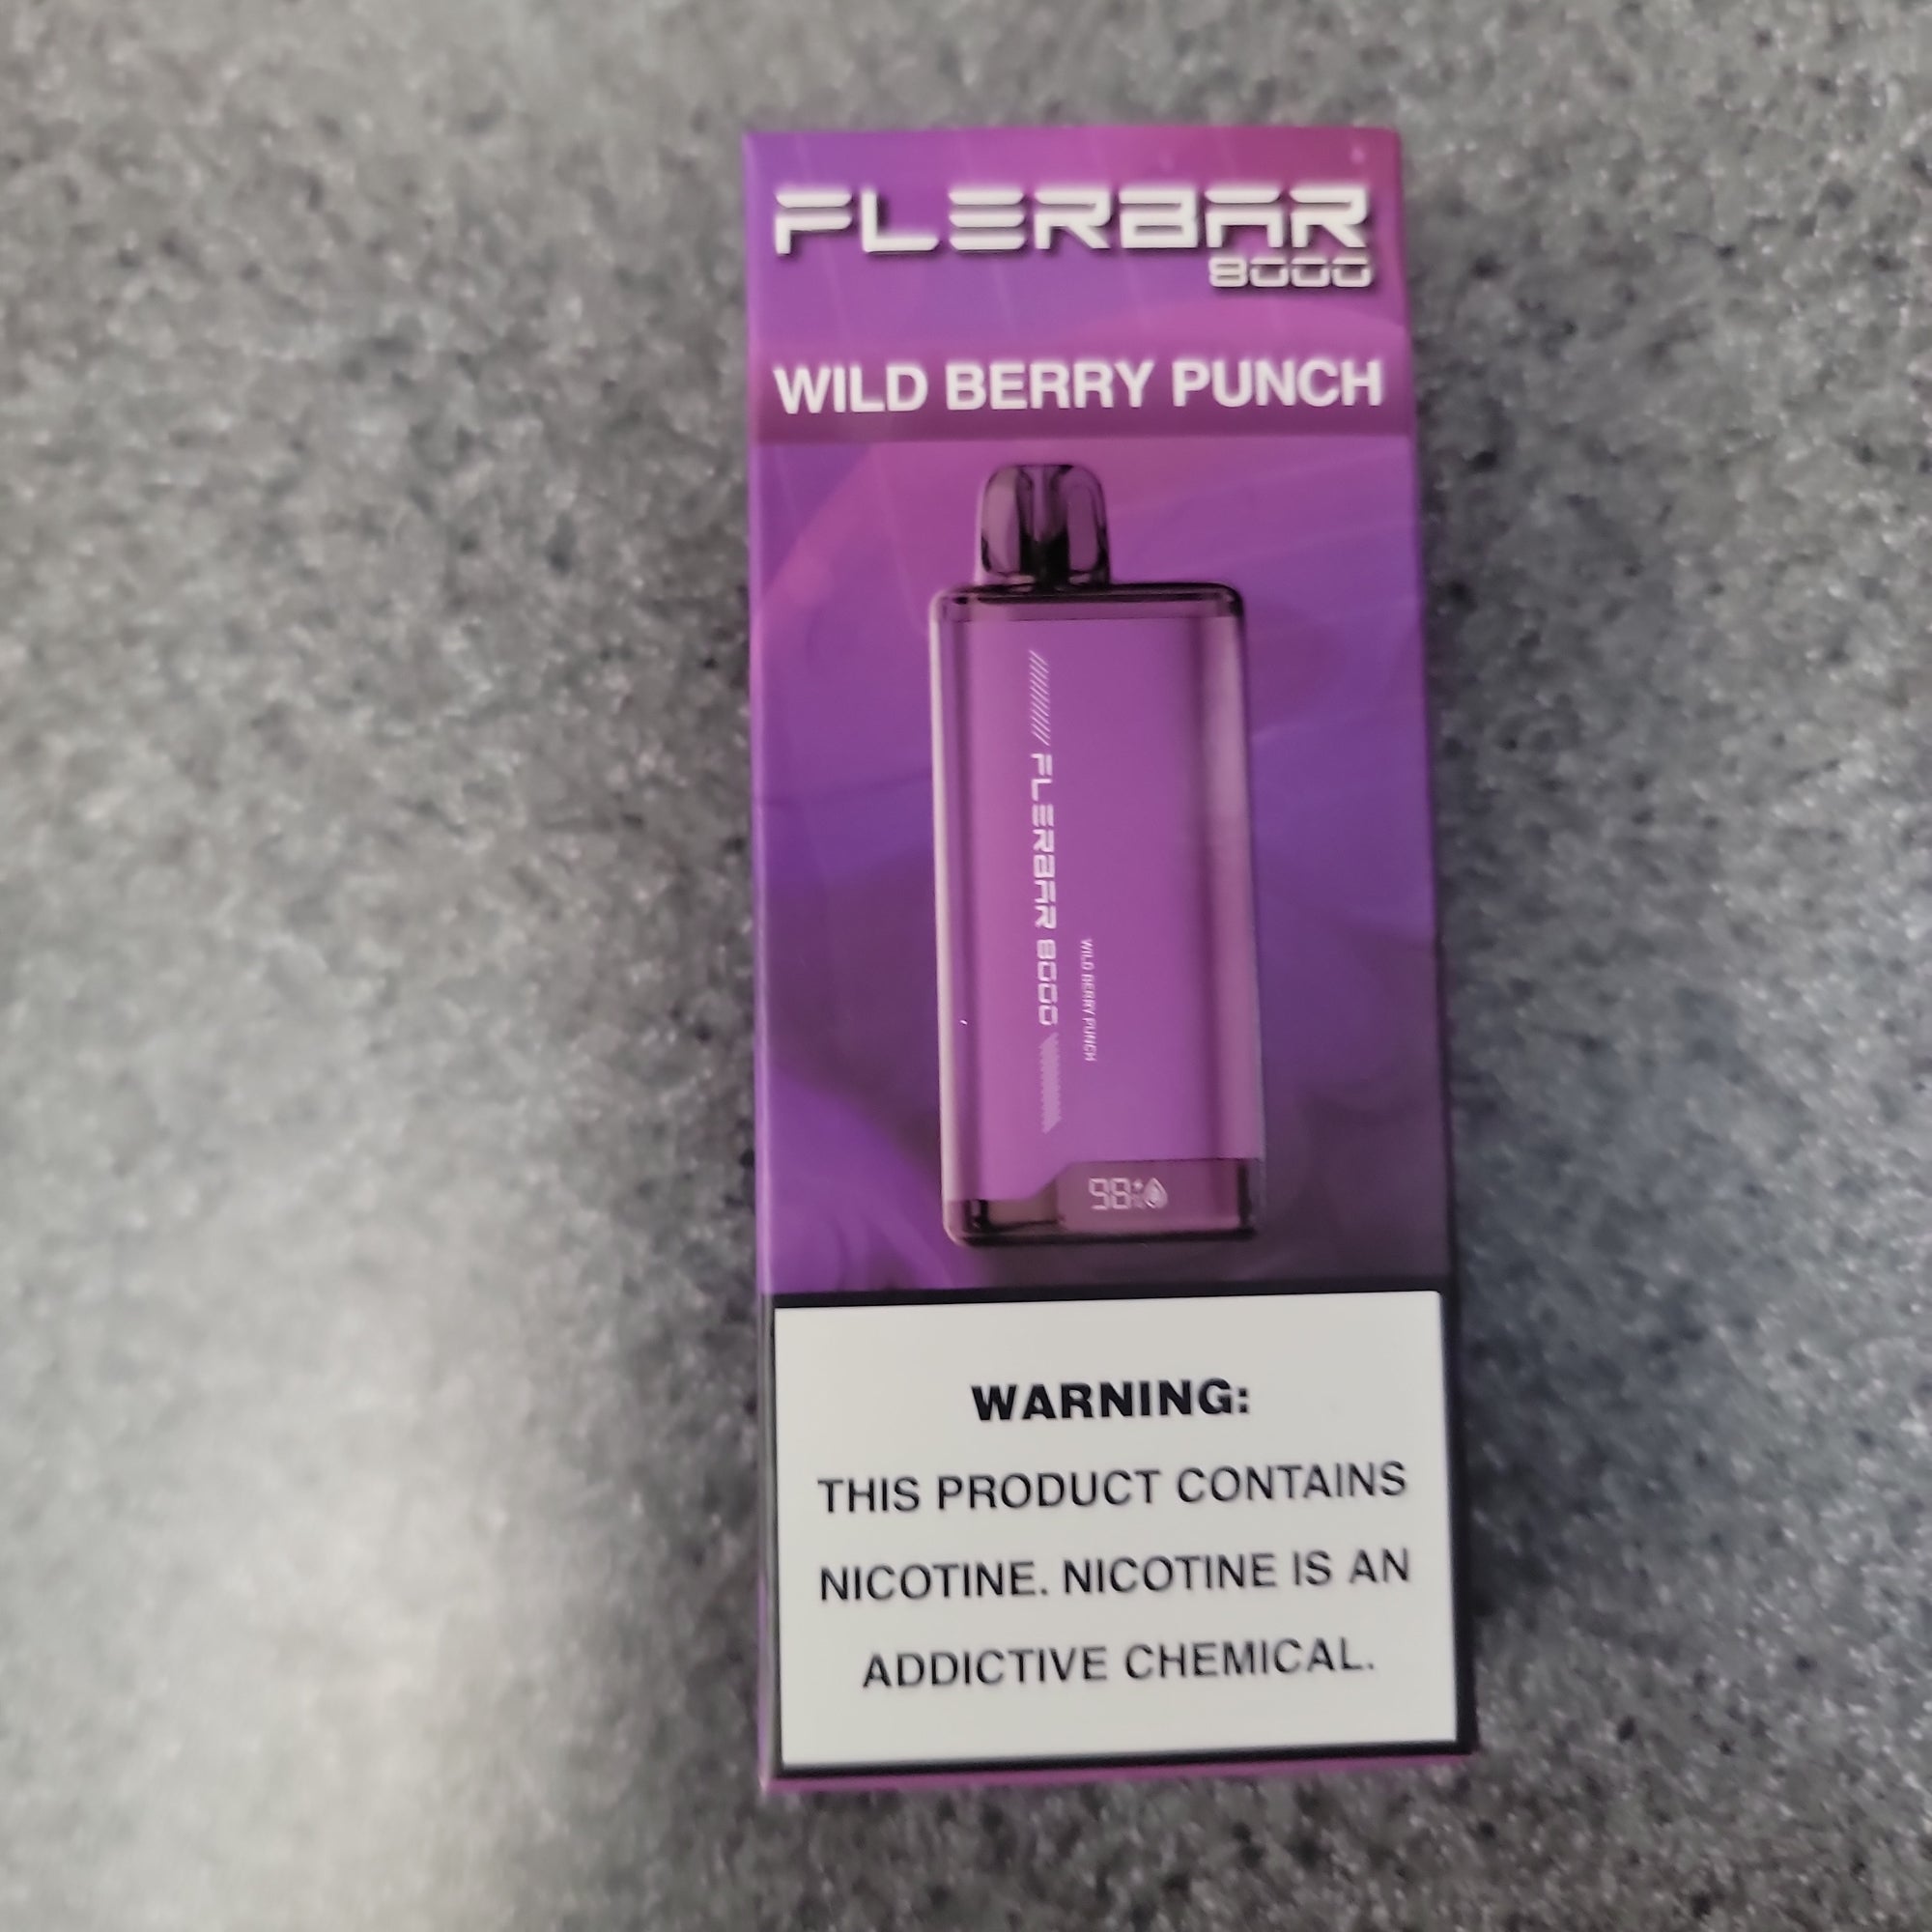 Flerbar Wild berry punch